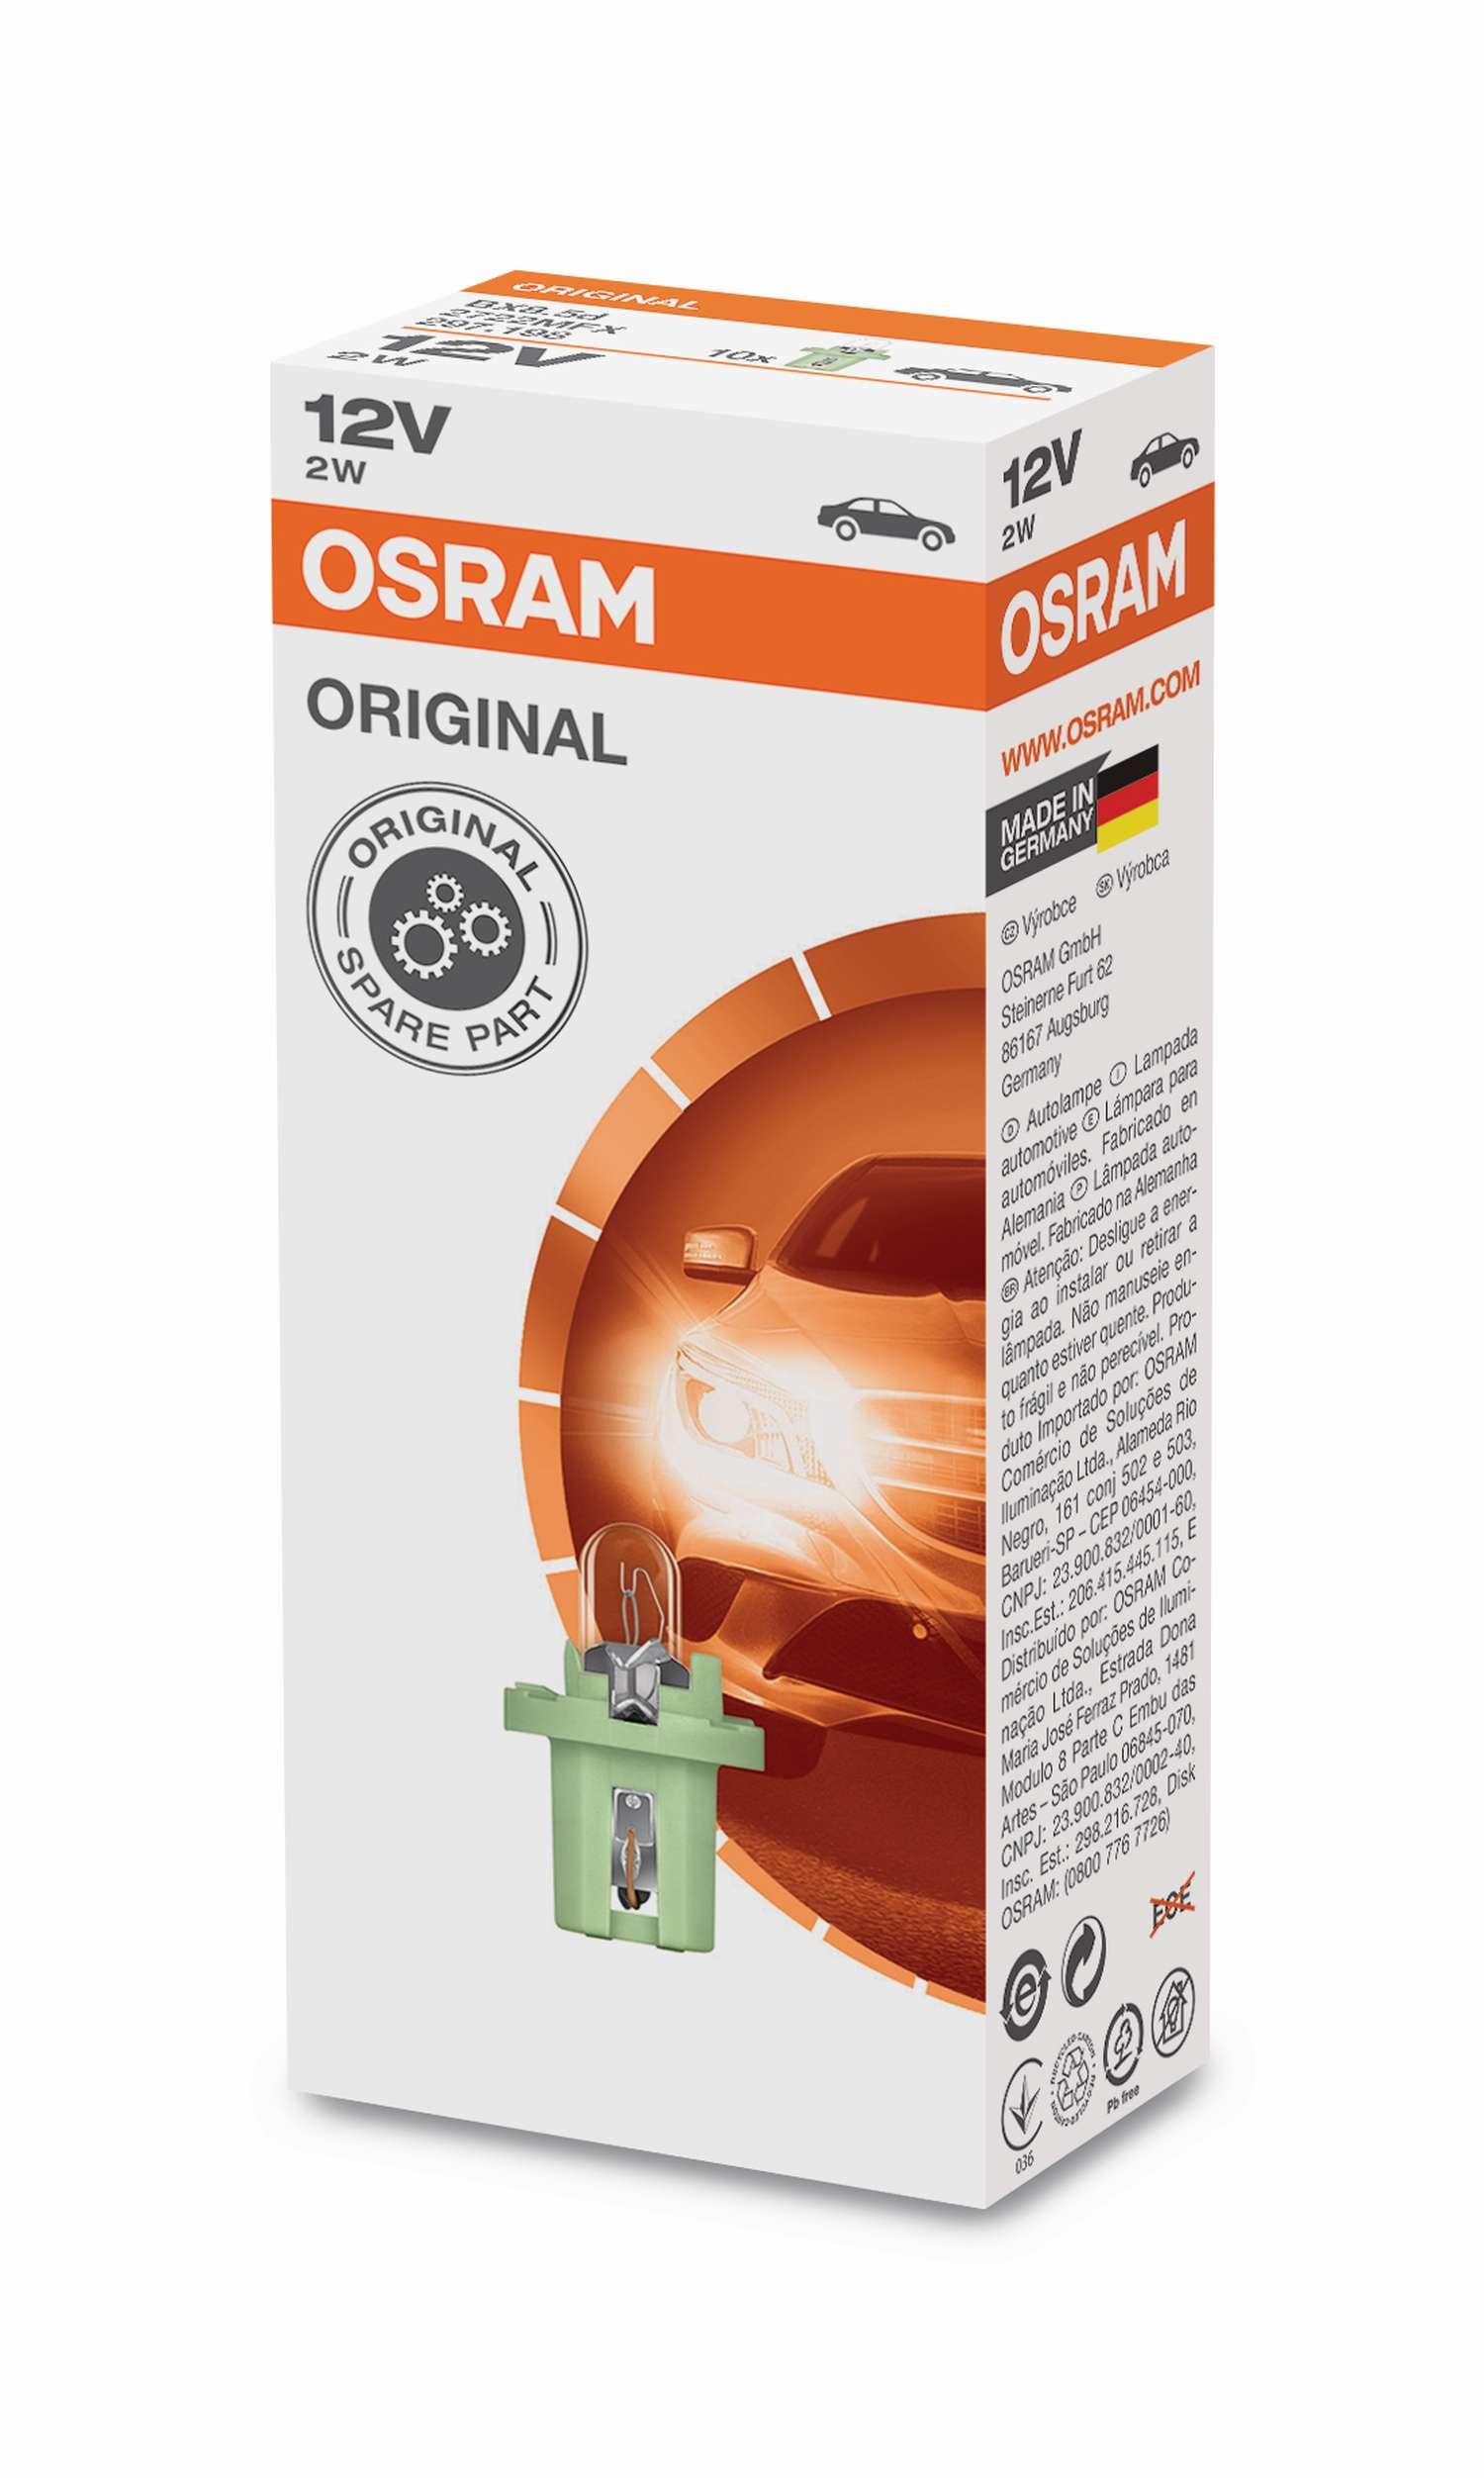 2W Kunststoffsockel Faltschachtel 12V Original OSRAM